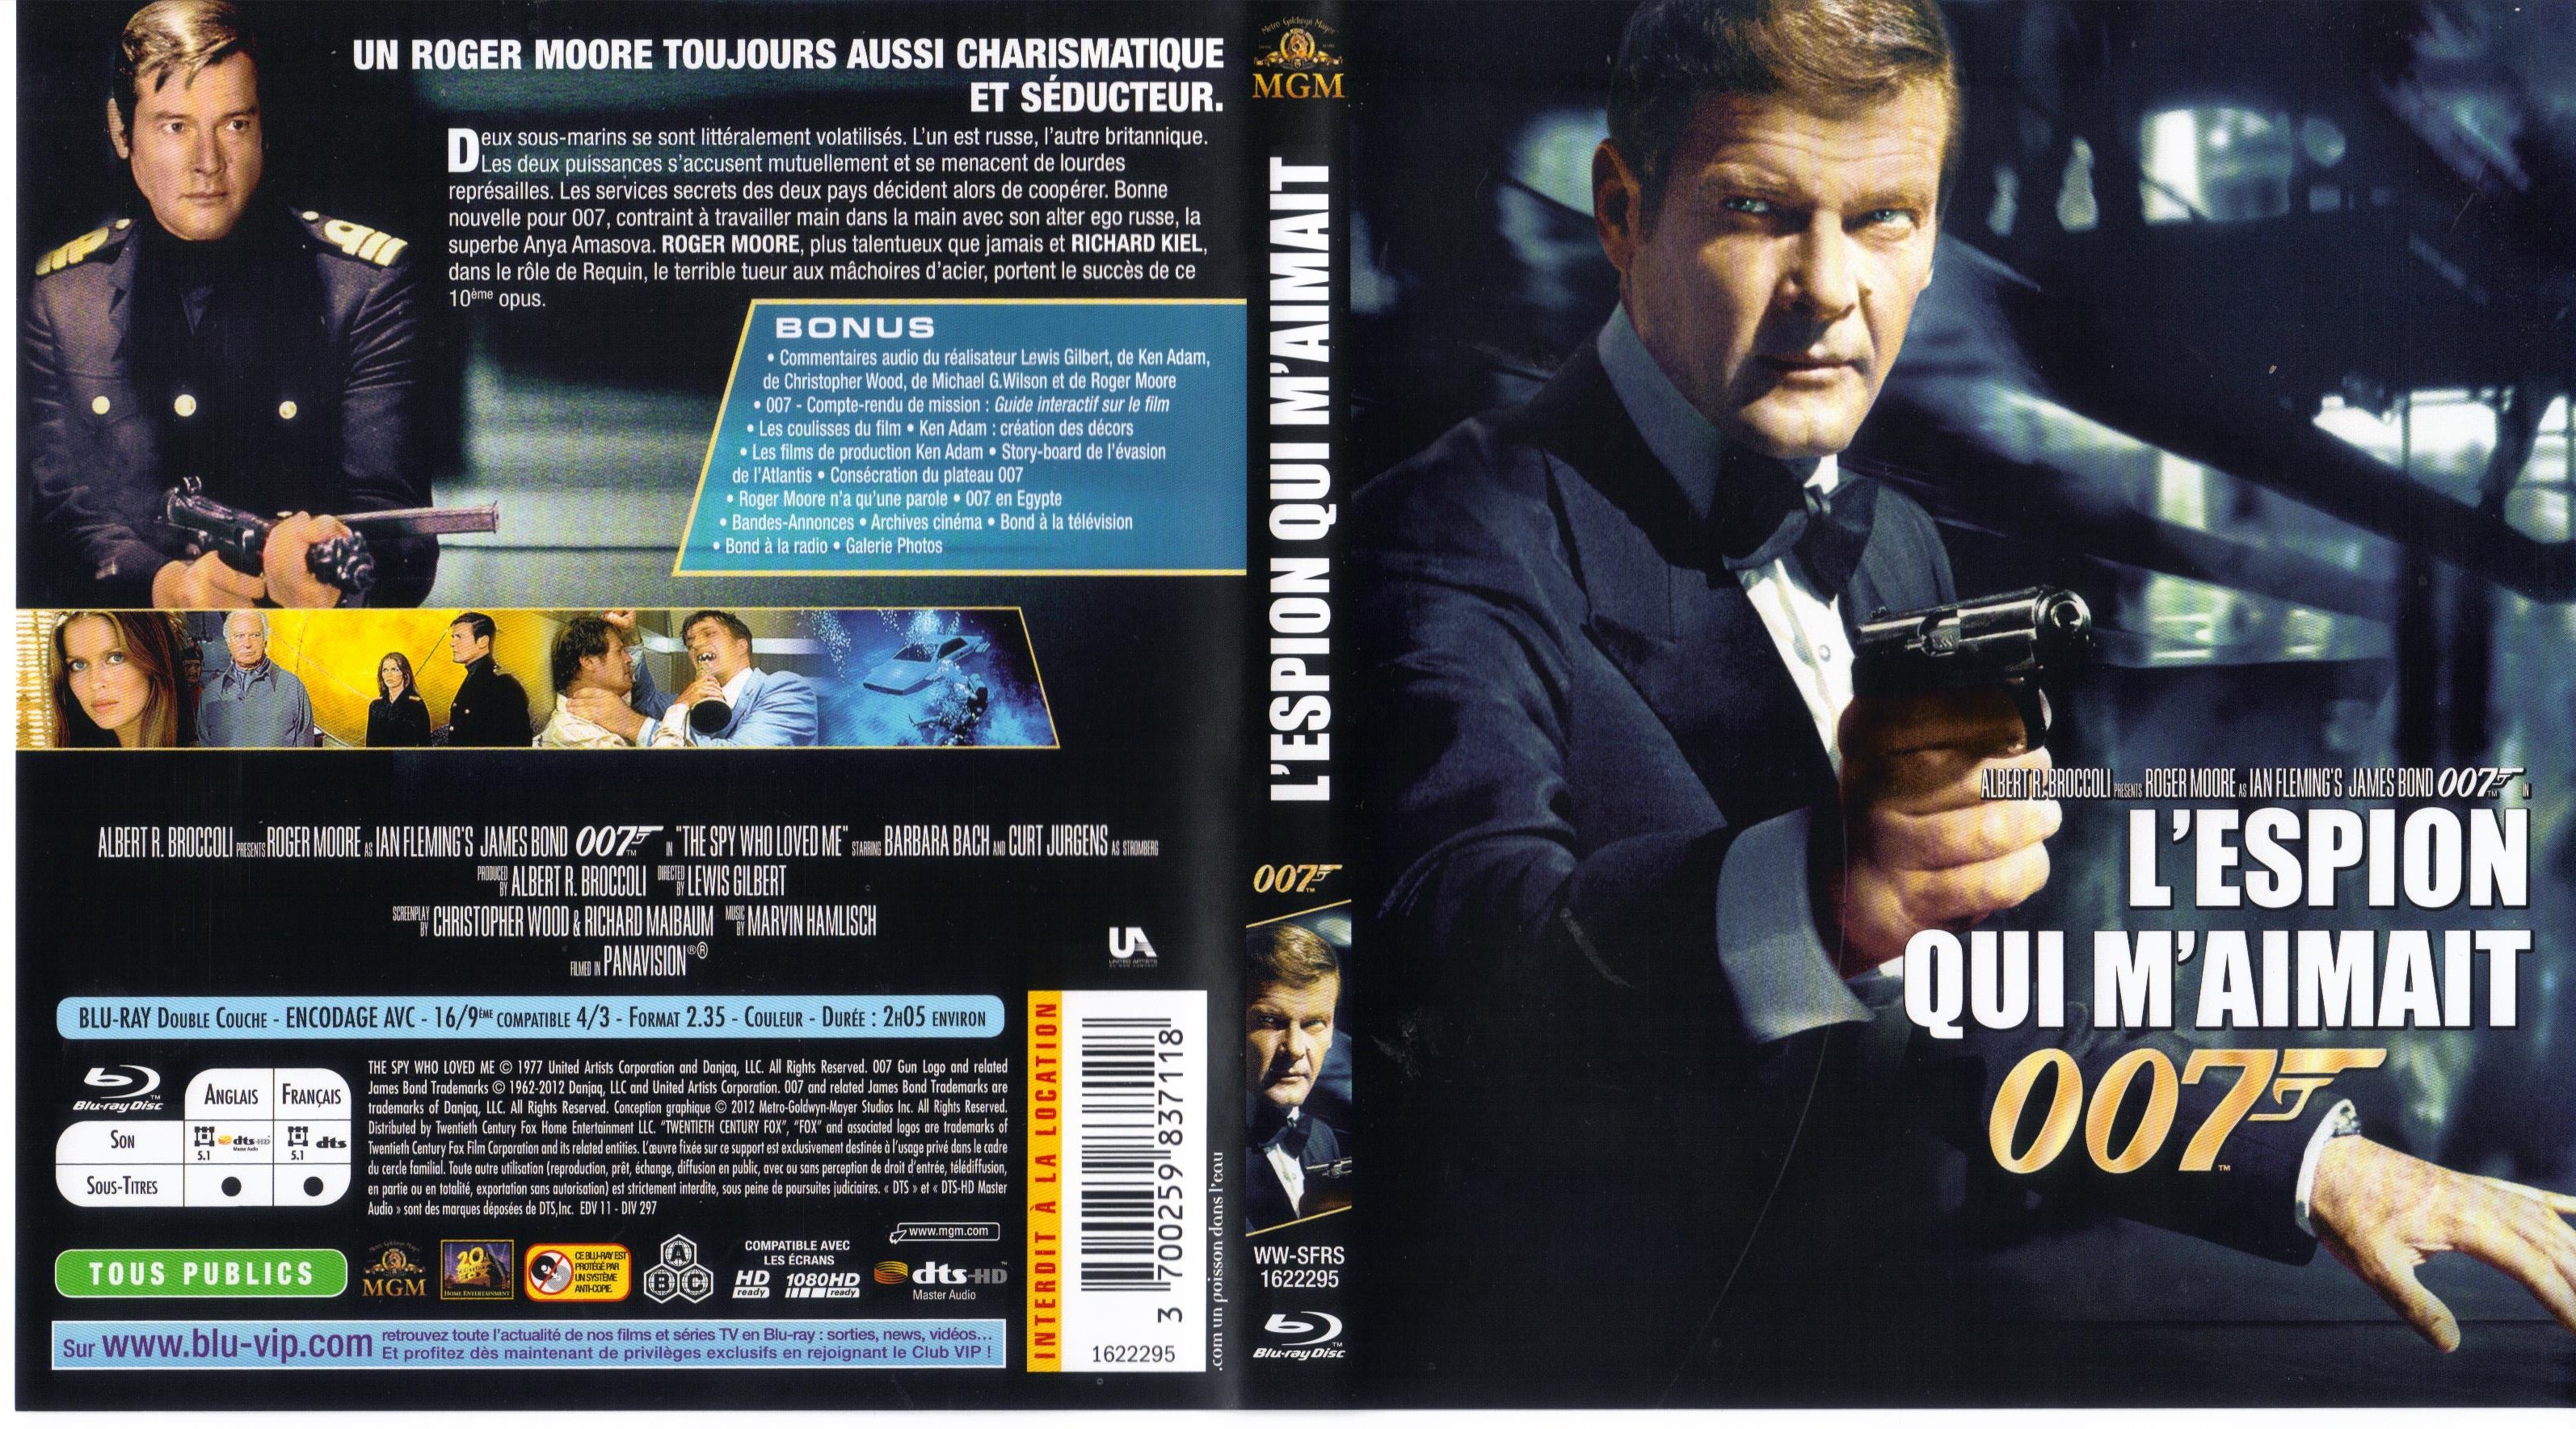 Jaquette DVD James Bond 007 L